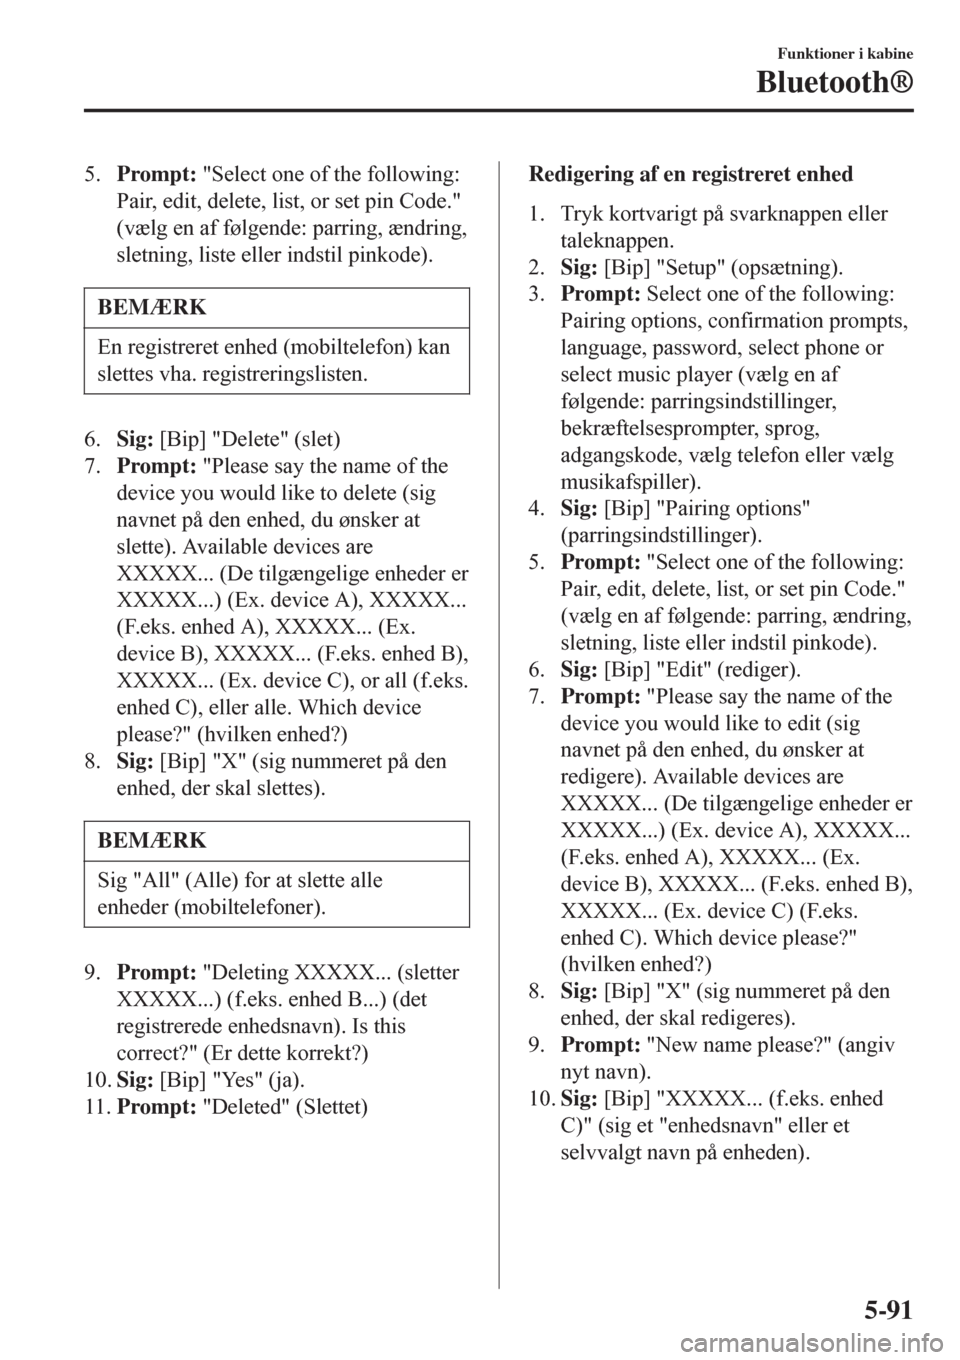 MAZDA MODEL CX-3 2016   Instruktionsbog (in Danish)  5.Prompt: "Select one of the following:
Pair, edit, delete, list, or set pin Code."
(vælg en af følgende: parring, ændring,
sletning, liste eller indstil pinkode).
BEMÆRK
En registreret enhed (mob